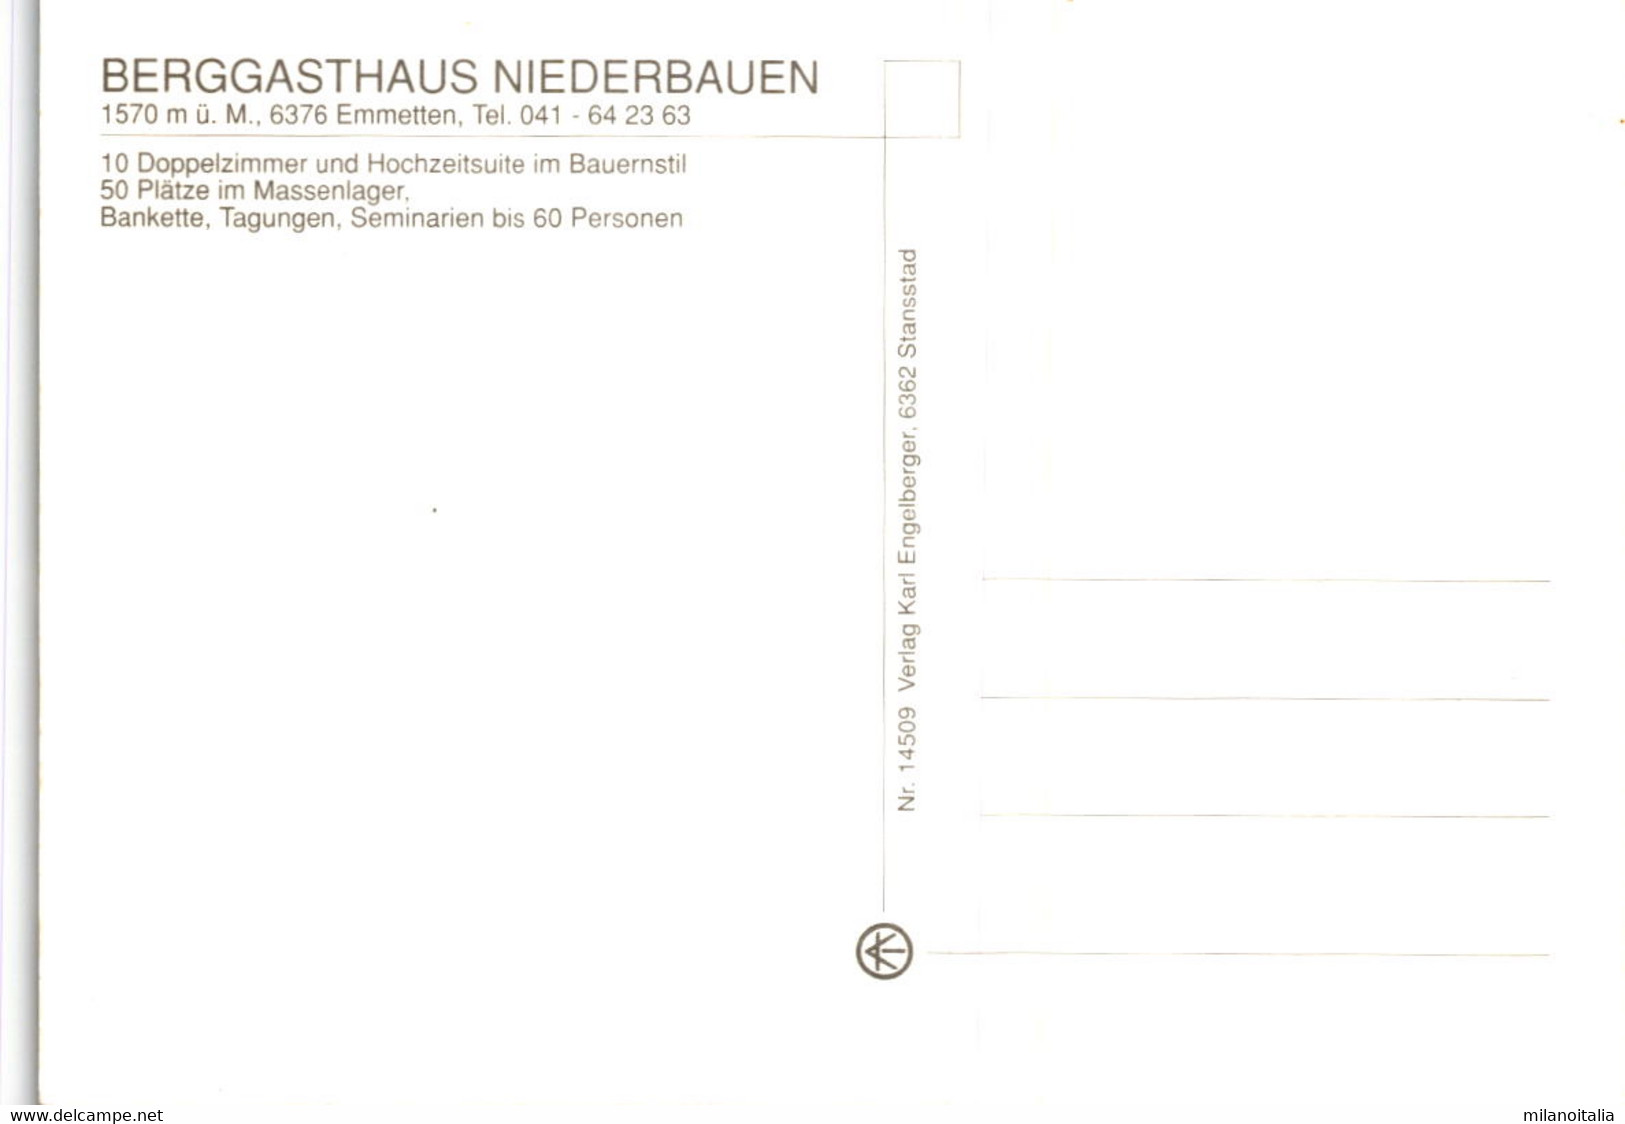 Berggasthaus Niederbauen, Emmetten - 3 Bilder (14509) - Emmetten